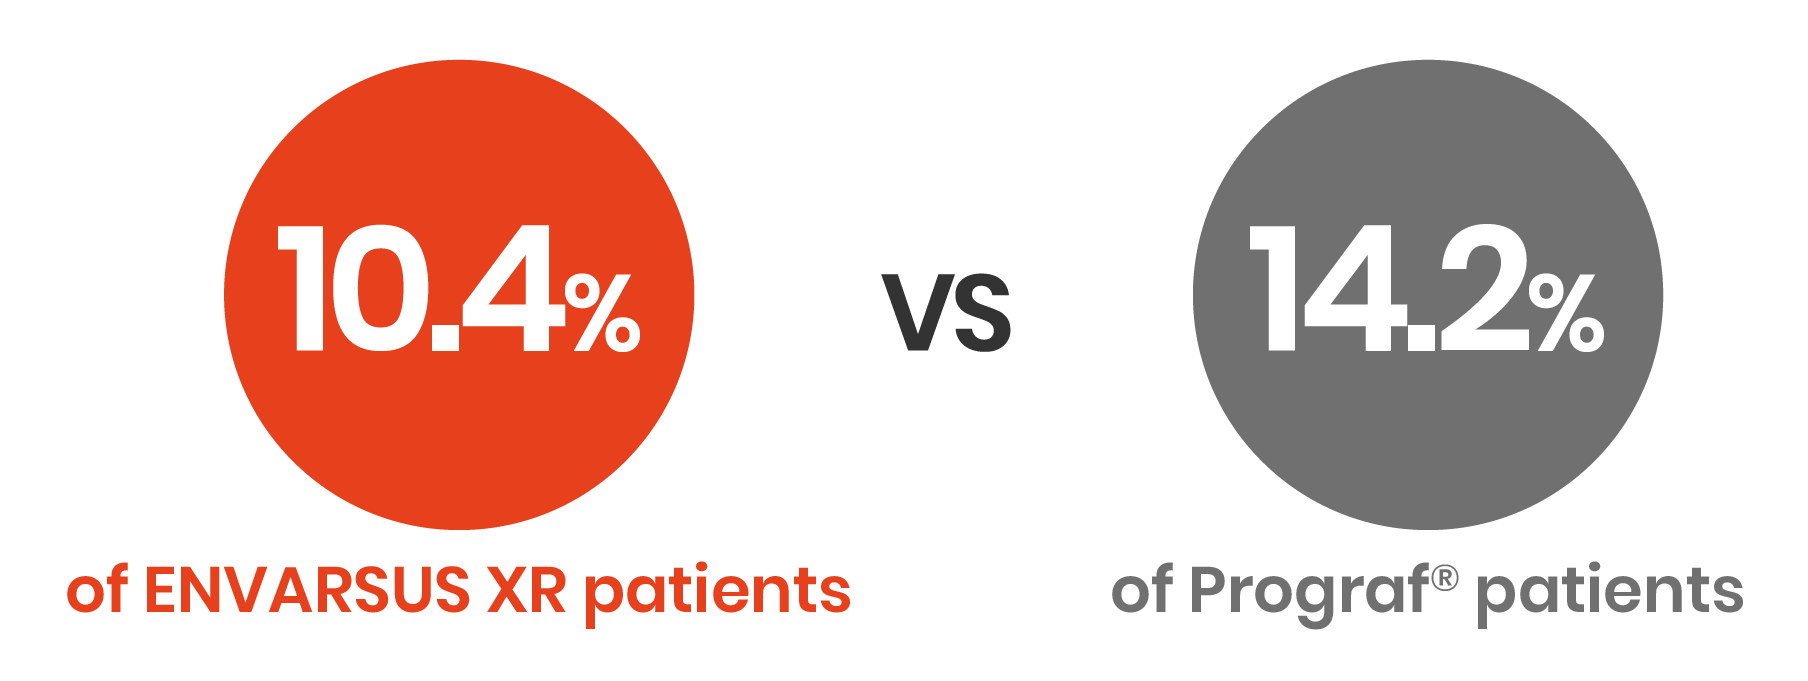 10.4% of ENVARSUS XR patients vs 14.2% of Prograf® patients